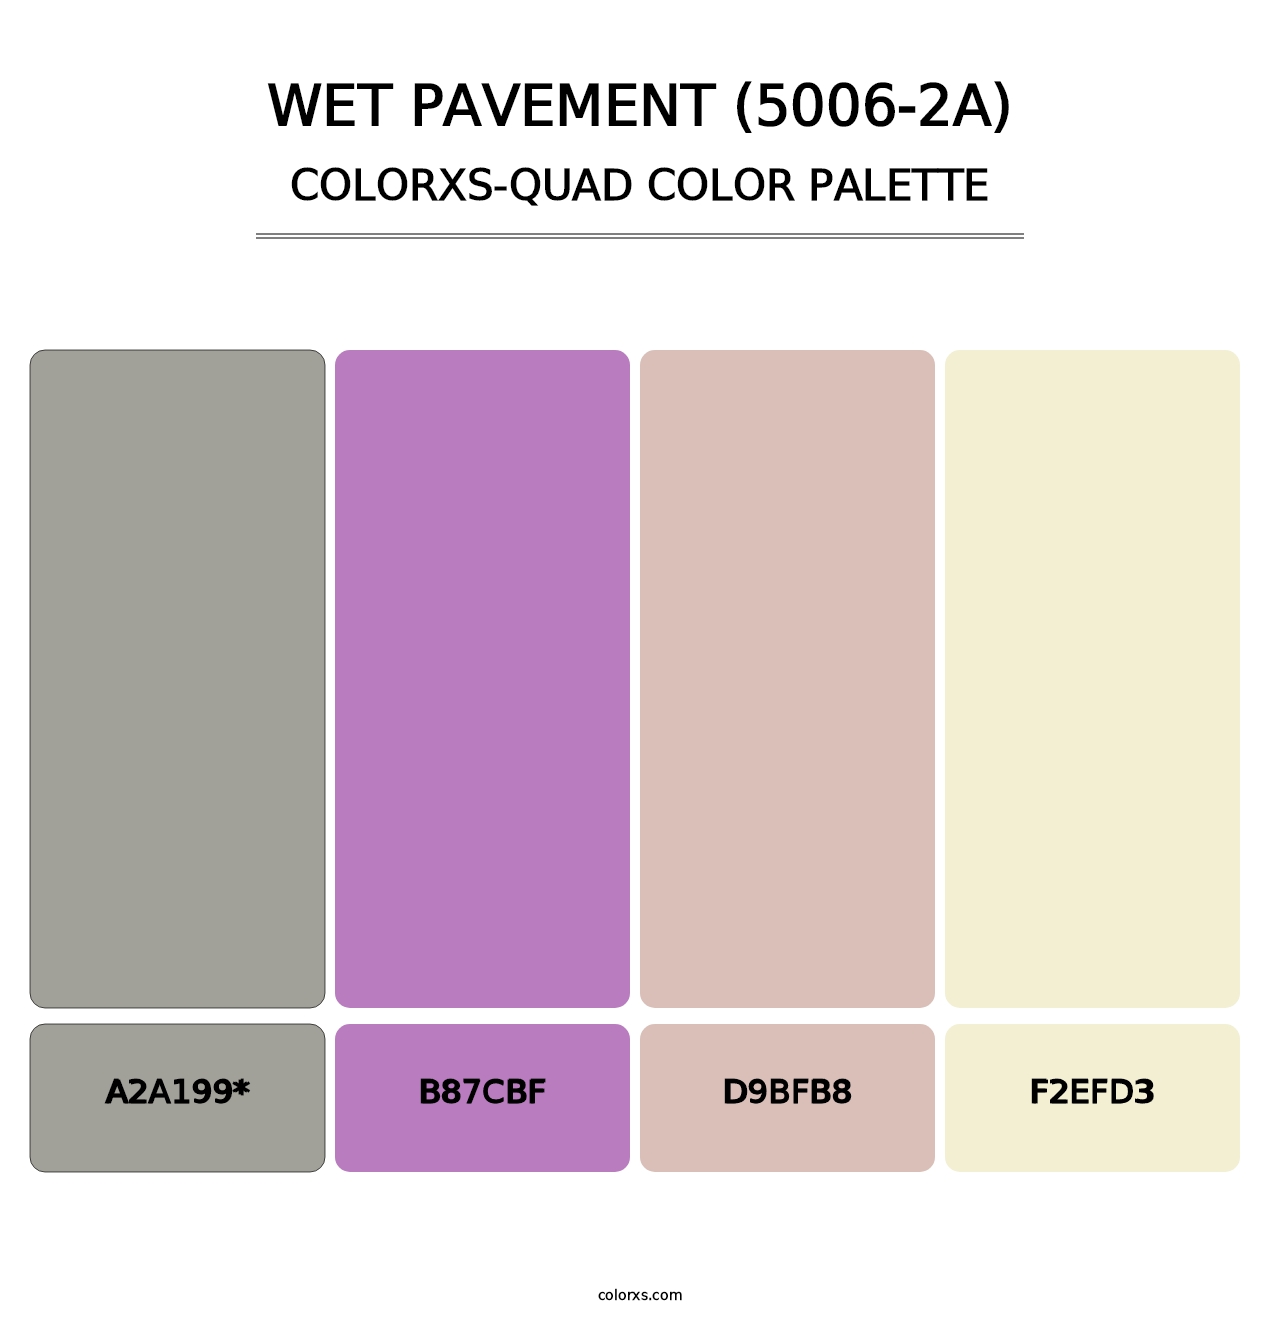 Wet Pavement (5006-2A) - Colorxs Quad Palette